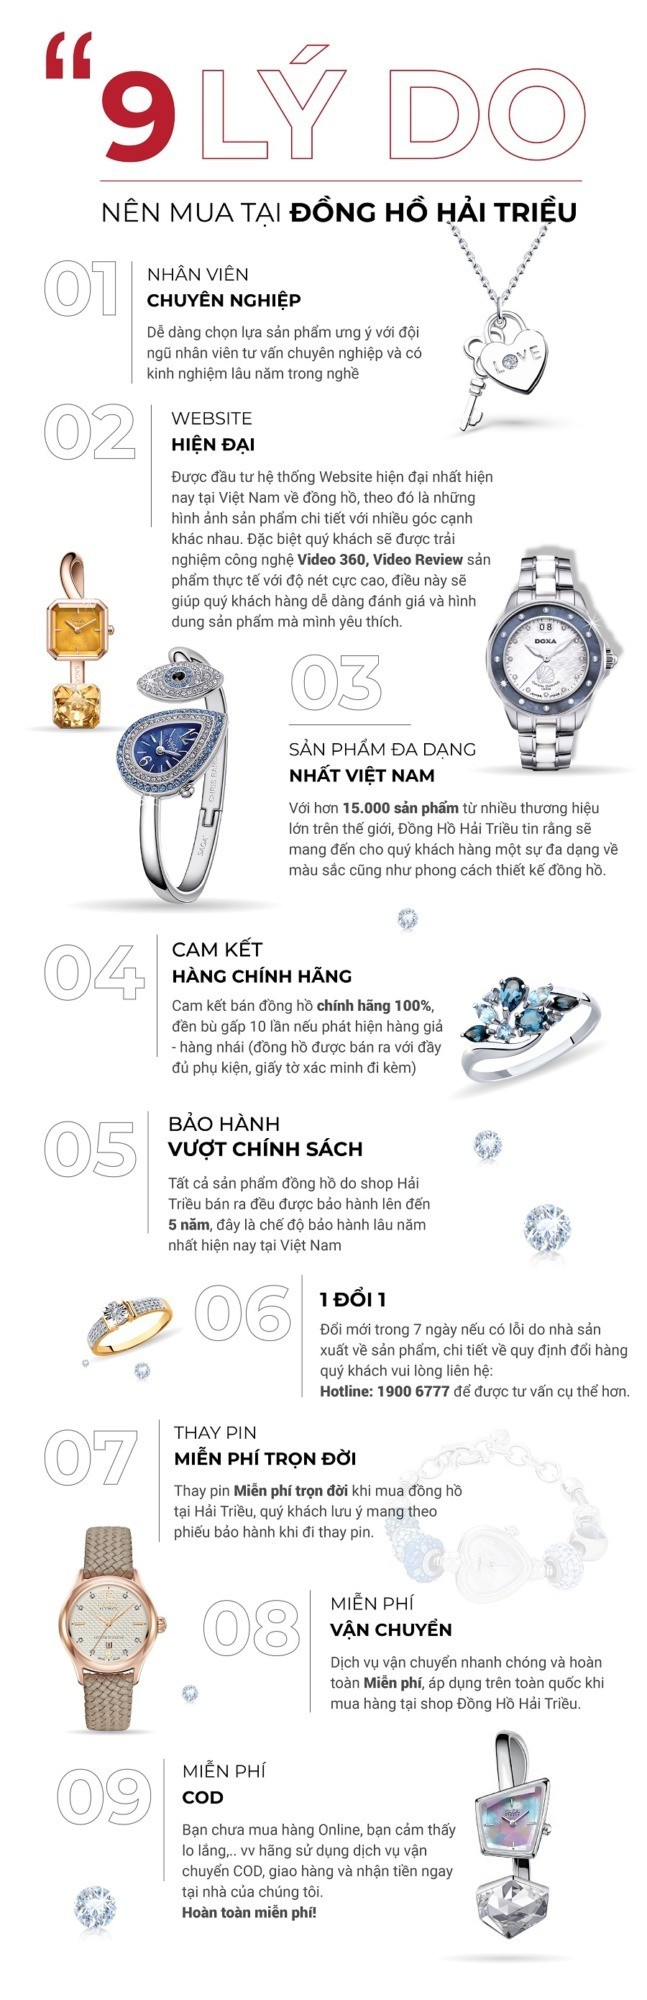 9 lý do nên mua đồng hồ Longines tại Hải Triều